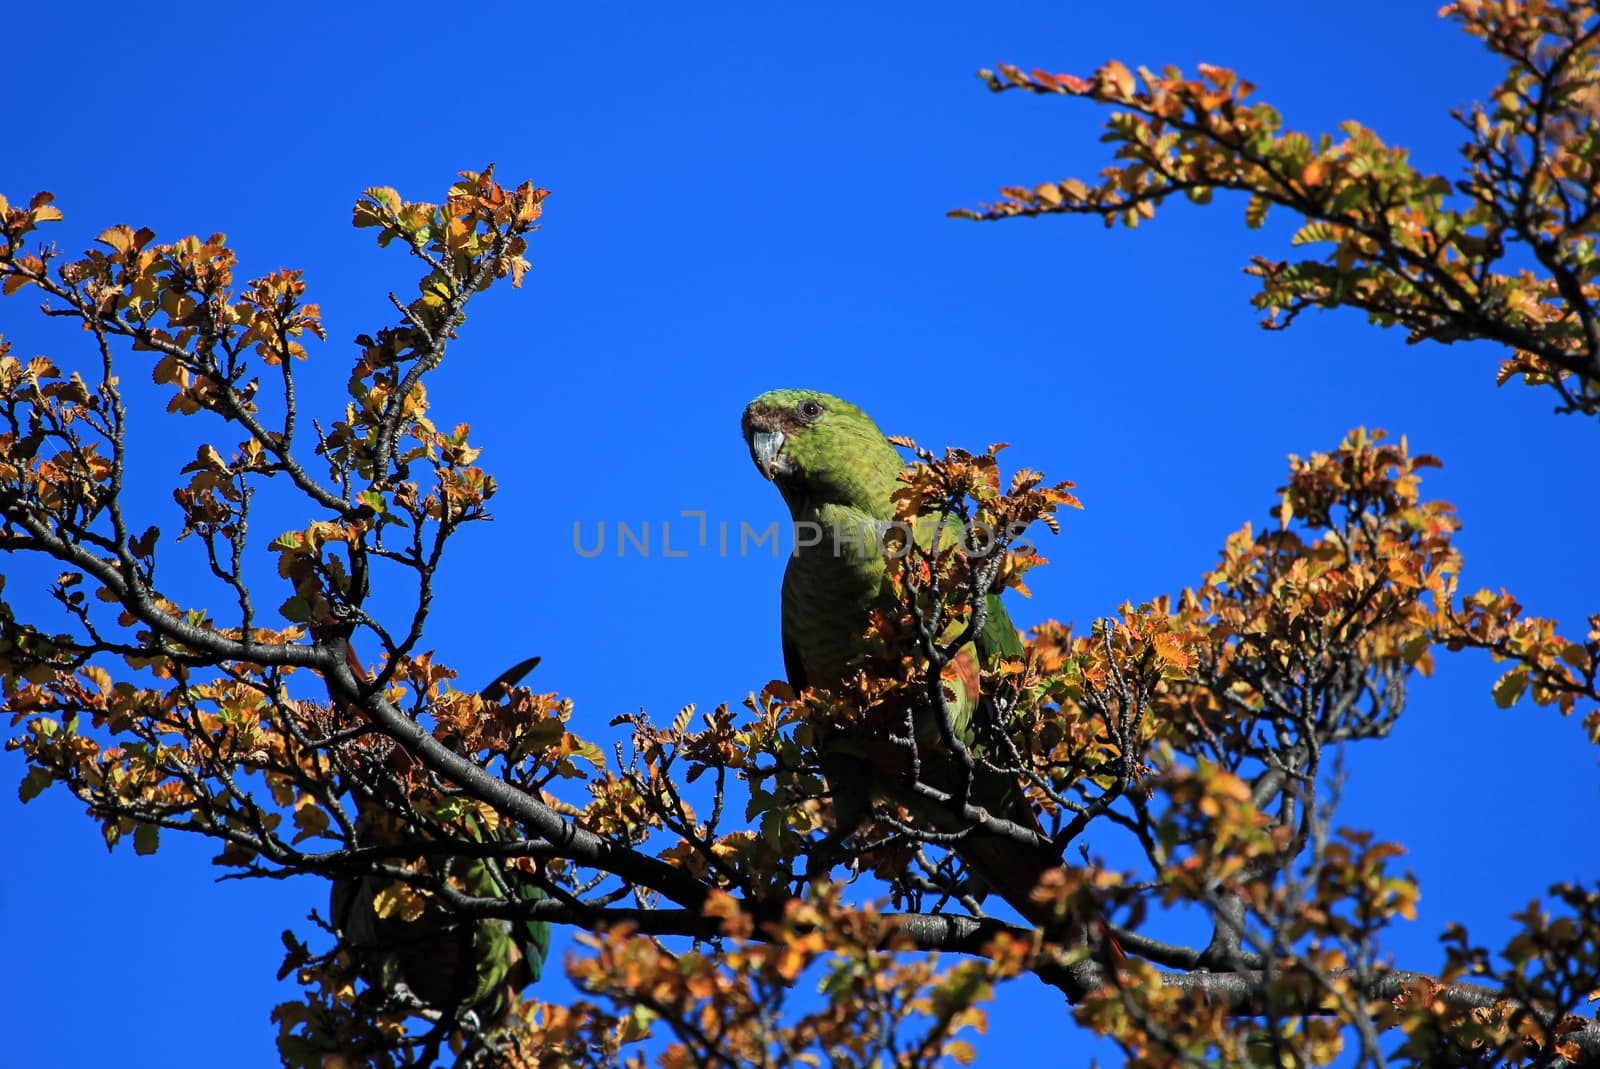 Austral Parakeet, Enicognathus Ferrugineus, on a tree near El Chalten, Patagonia, Argentina